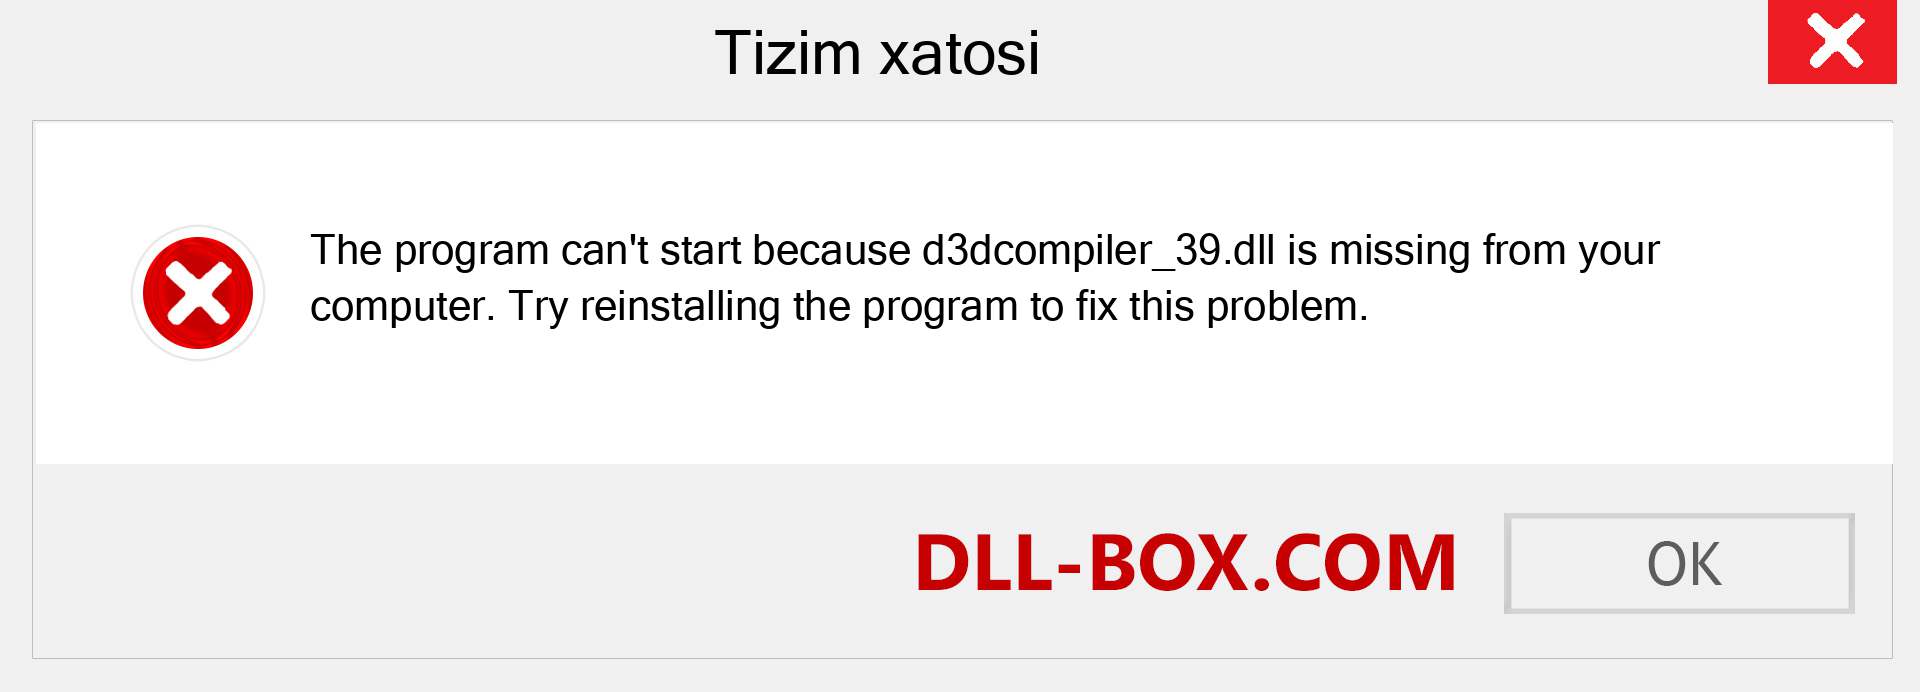 d3dcompiler_39.dll fayli yo'qolganmi?. Windows 7, 8, 10 uchun yuklab olish - Windowsda d3dcompiler_39 dll etishmayotgan xatoni tuzating, rasmlar, rasmlar